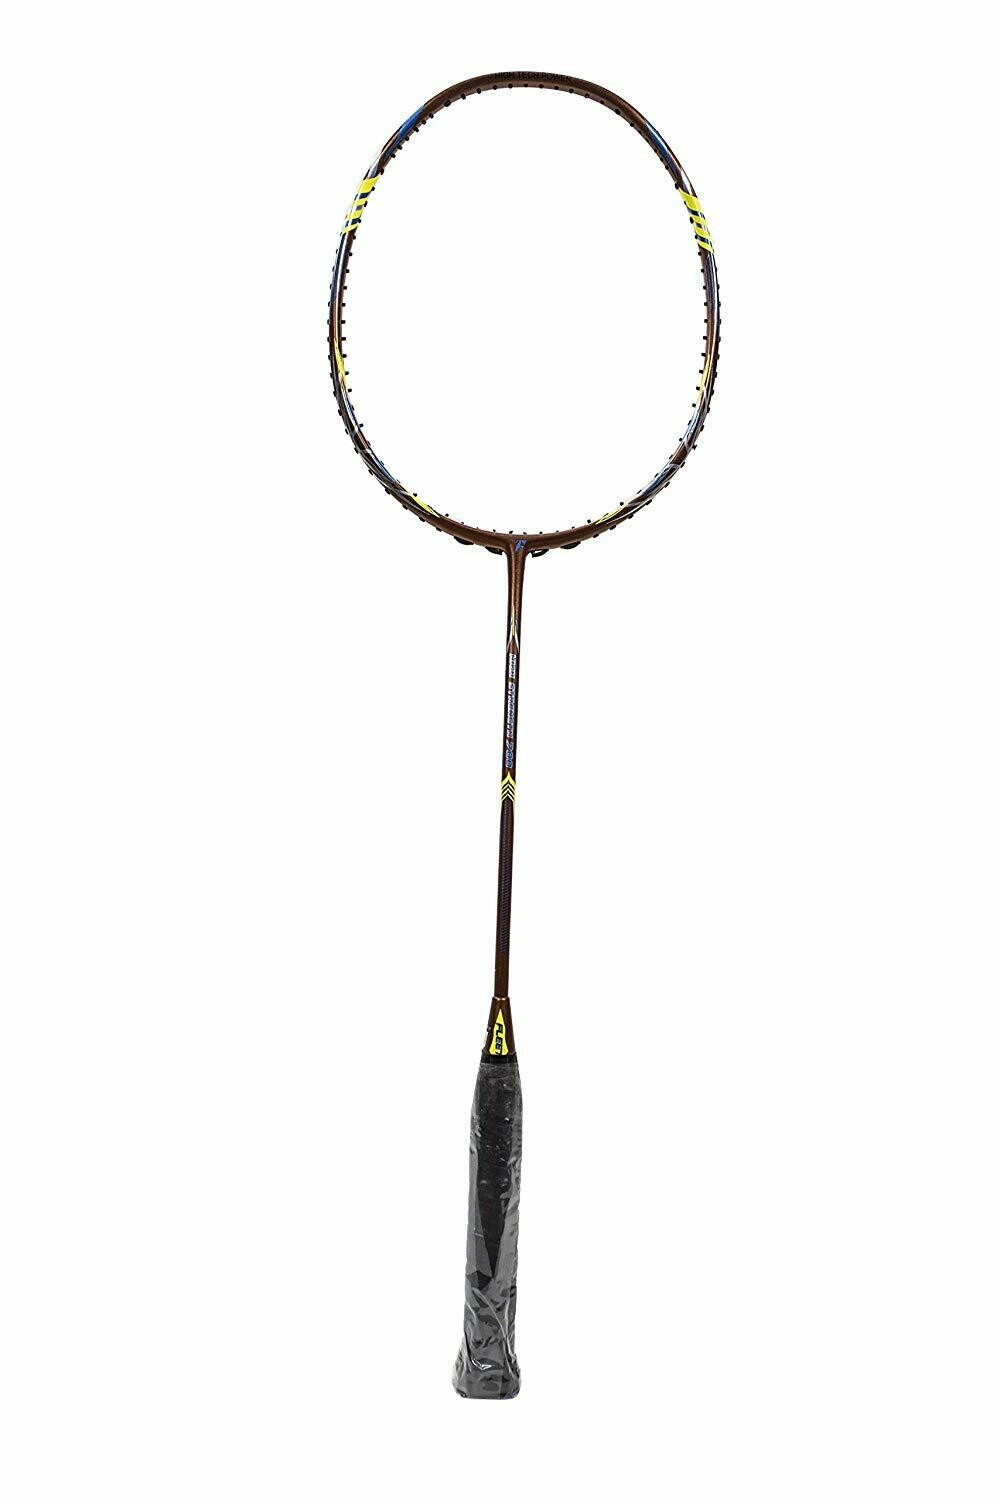 Fleet High Strength 700 Brown Badminton Racquet